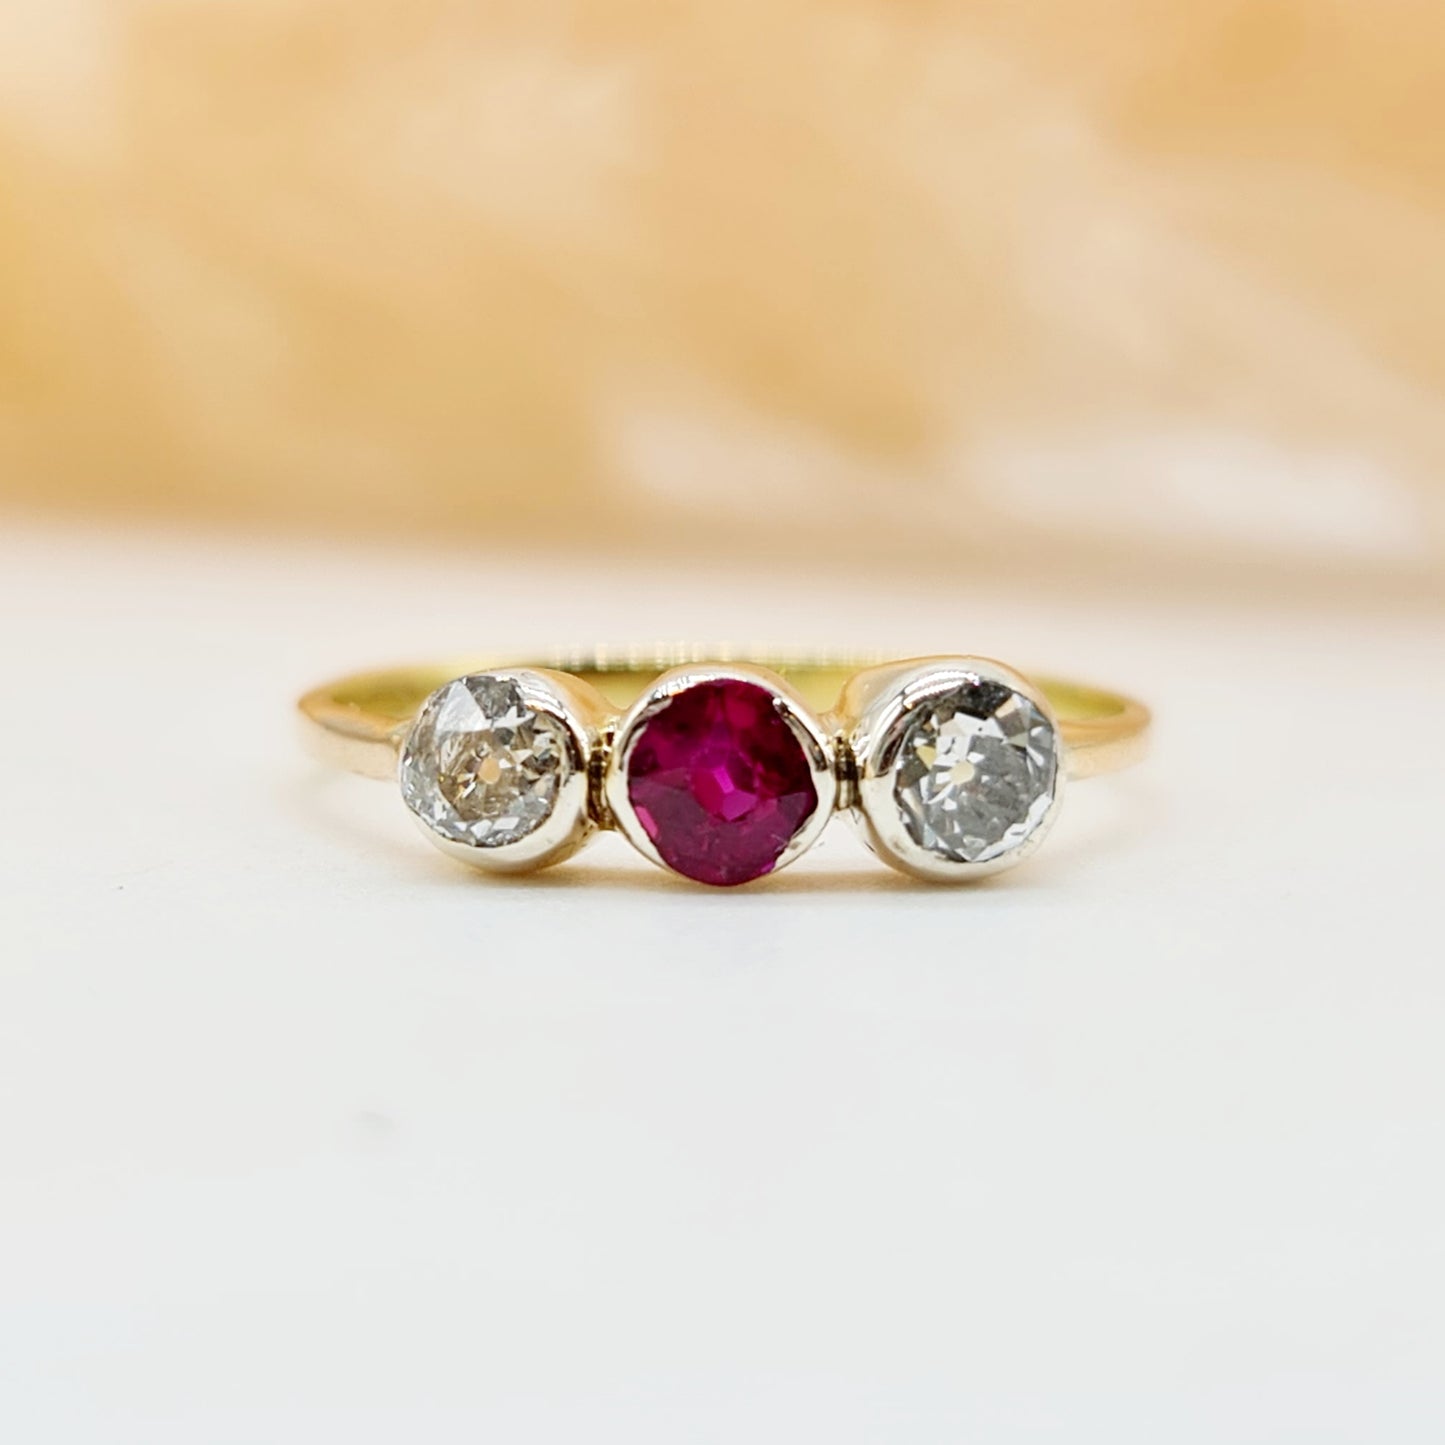 Jugendstil Ring aus 585 14 kt Gelbgold mit einem runden Rubin und 2 Diamanten im Altschliff ca 0,38ct - Elegante Schönheit für besondere Anlässe